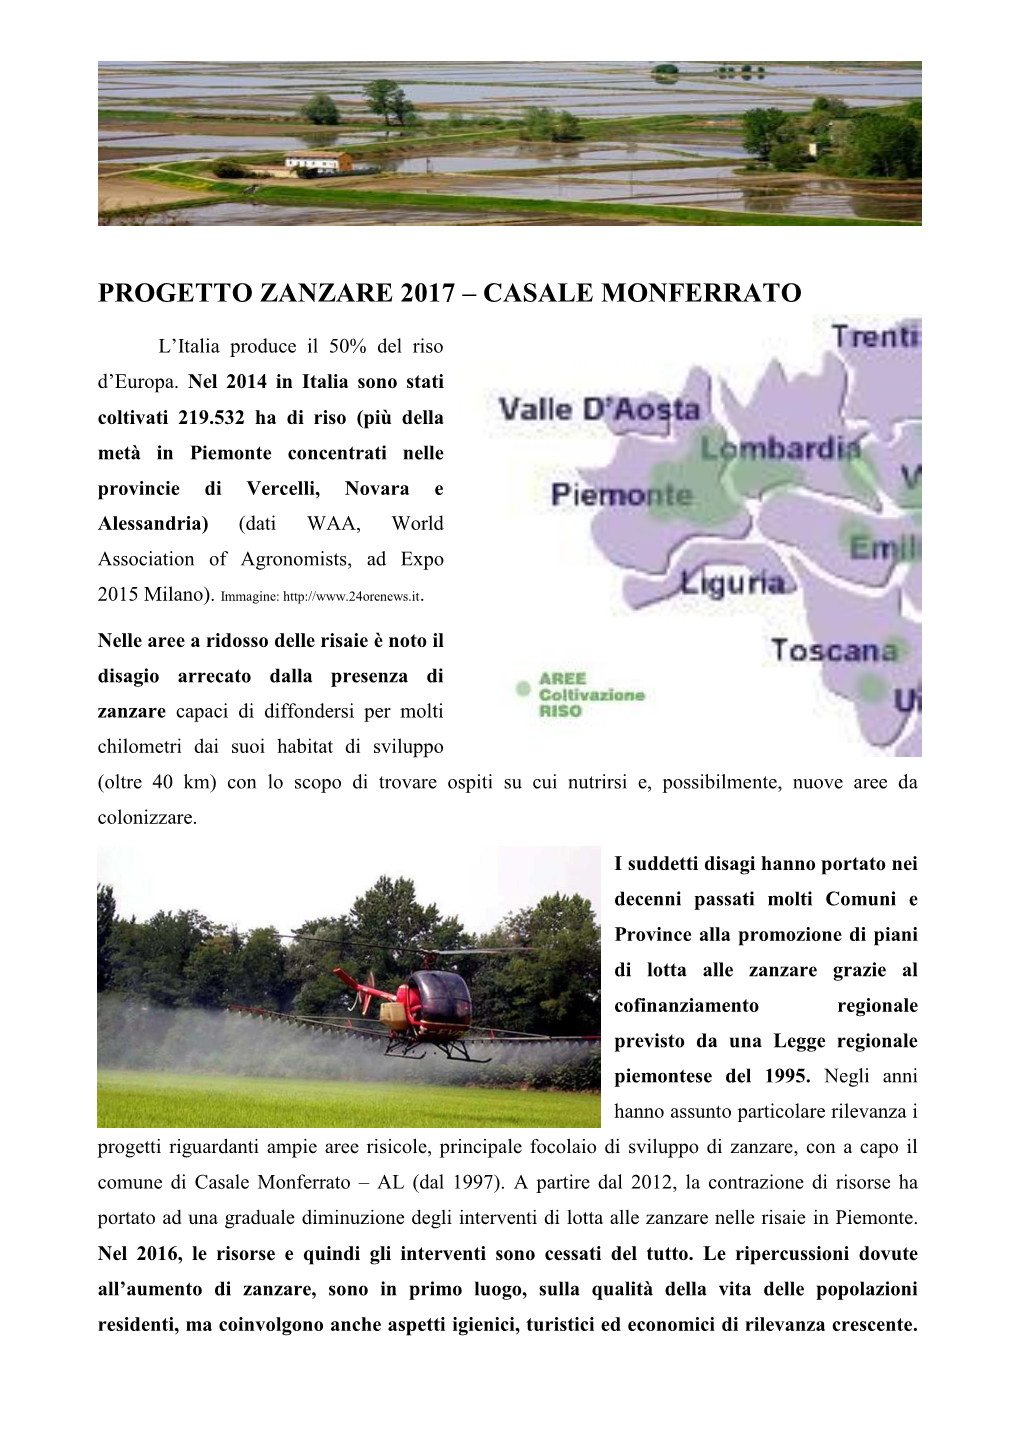 Progetto Zanzare 2017 – Casale Monferrato